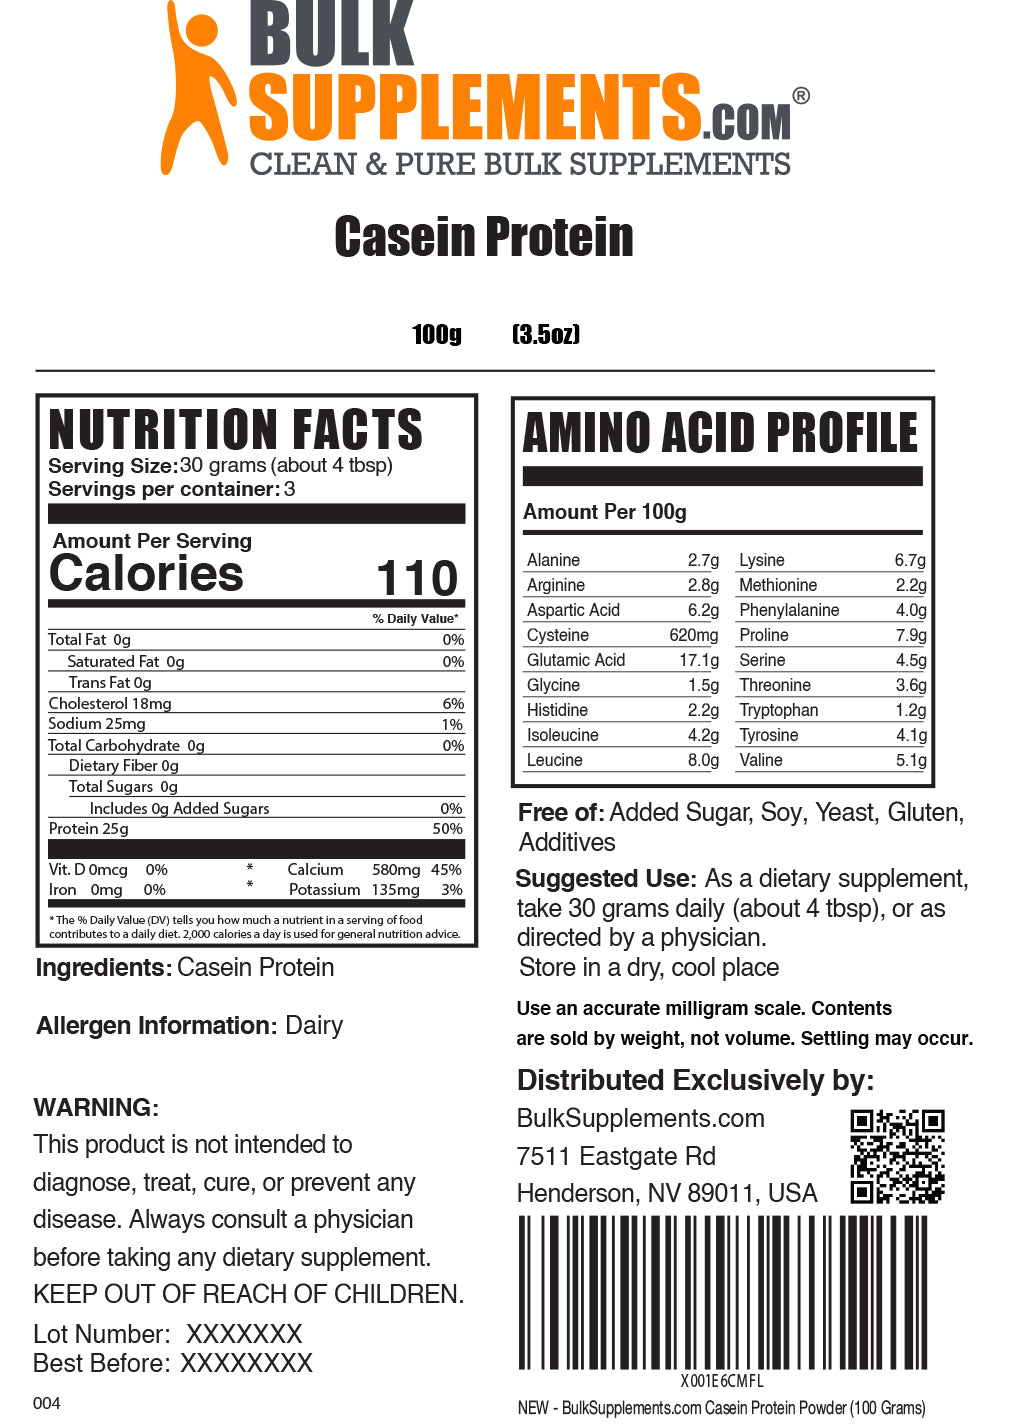 250g casein protein powder supplement facts label